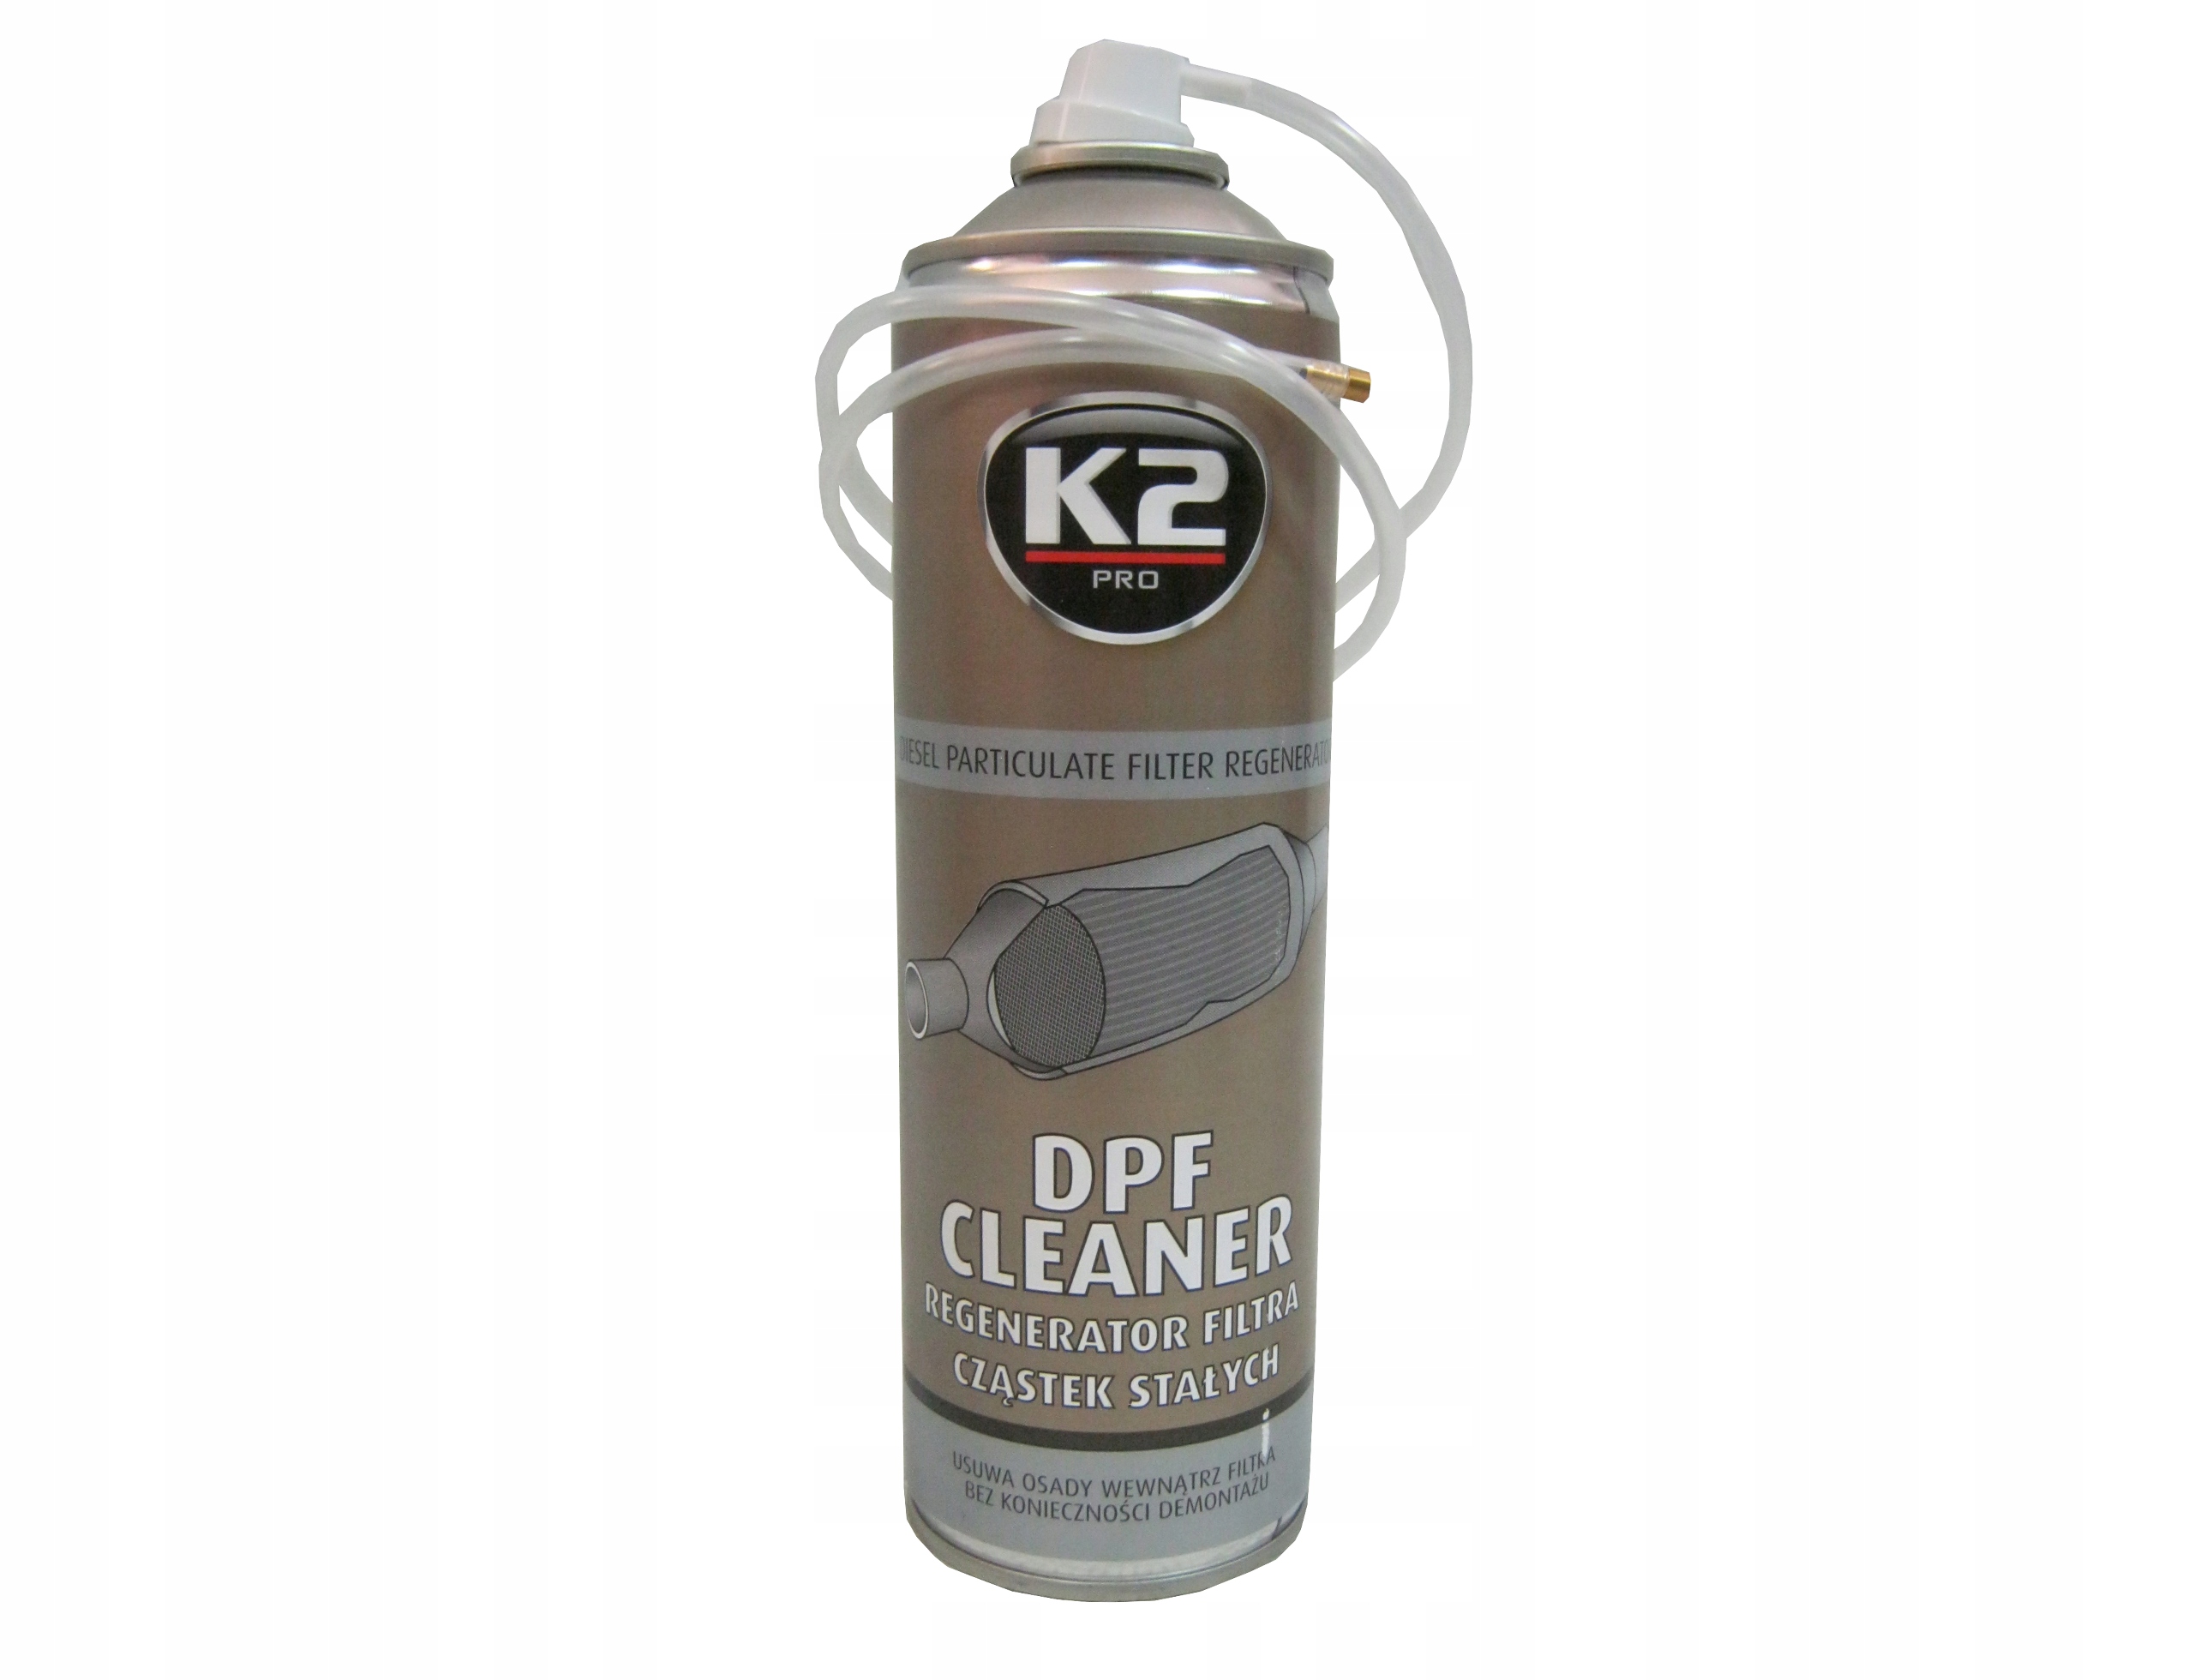 Очистка сажевого присадка. K2 очиститель DPF. Жидкость для промывки сажевого фильтра дизельного двигателя. K2 w155 очиститель сажевого/сажевого фильтра объем: 5л, очиститель DPF/Fap. DPF Cleaner очиститель сажевого фильтра.